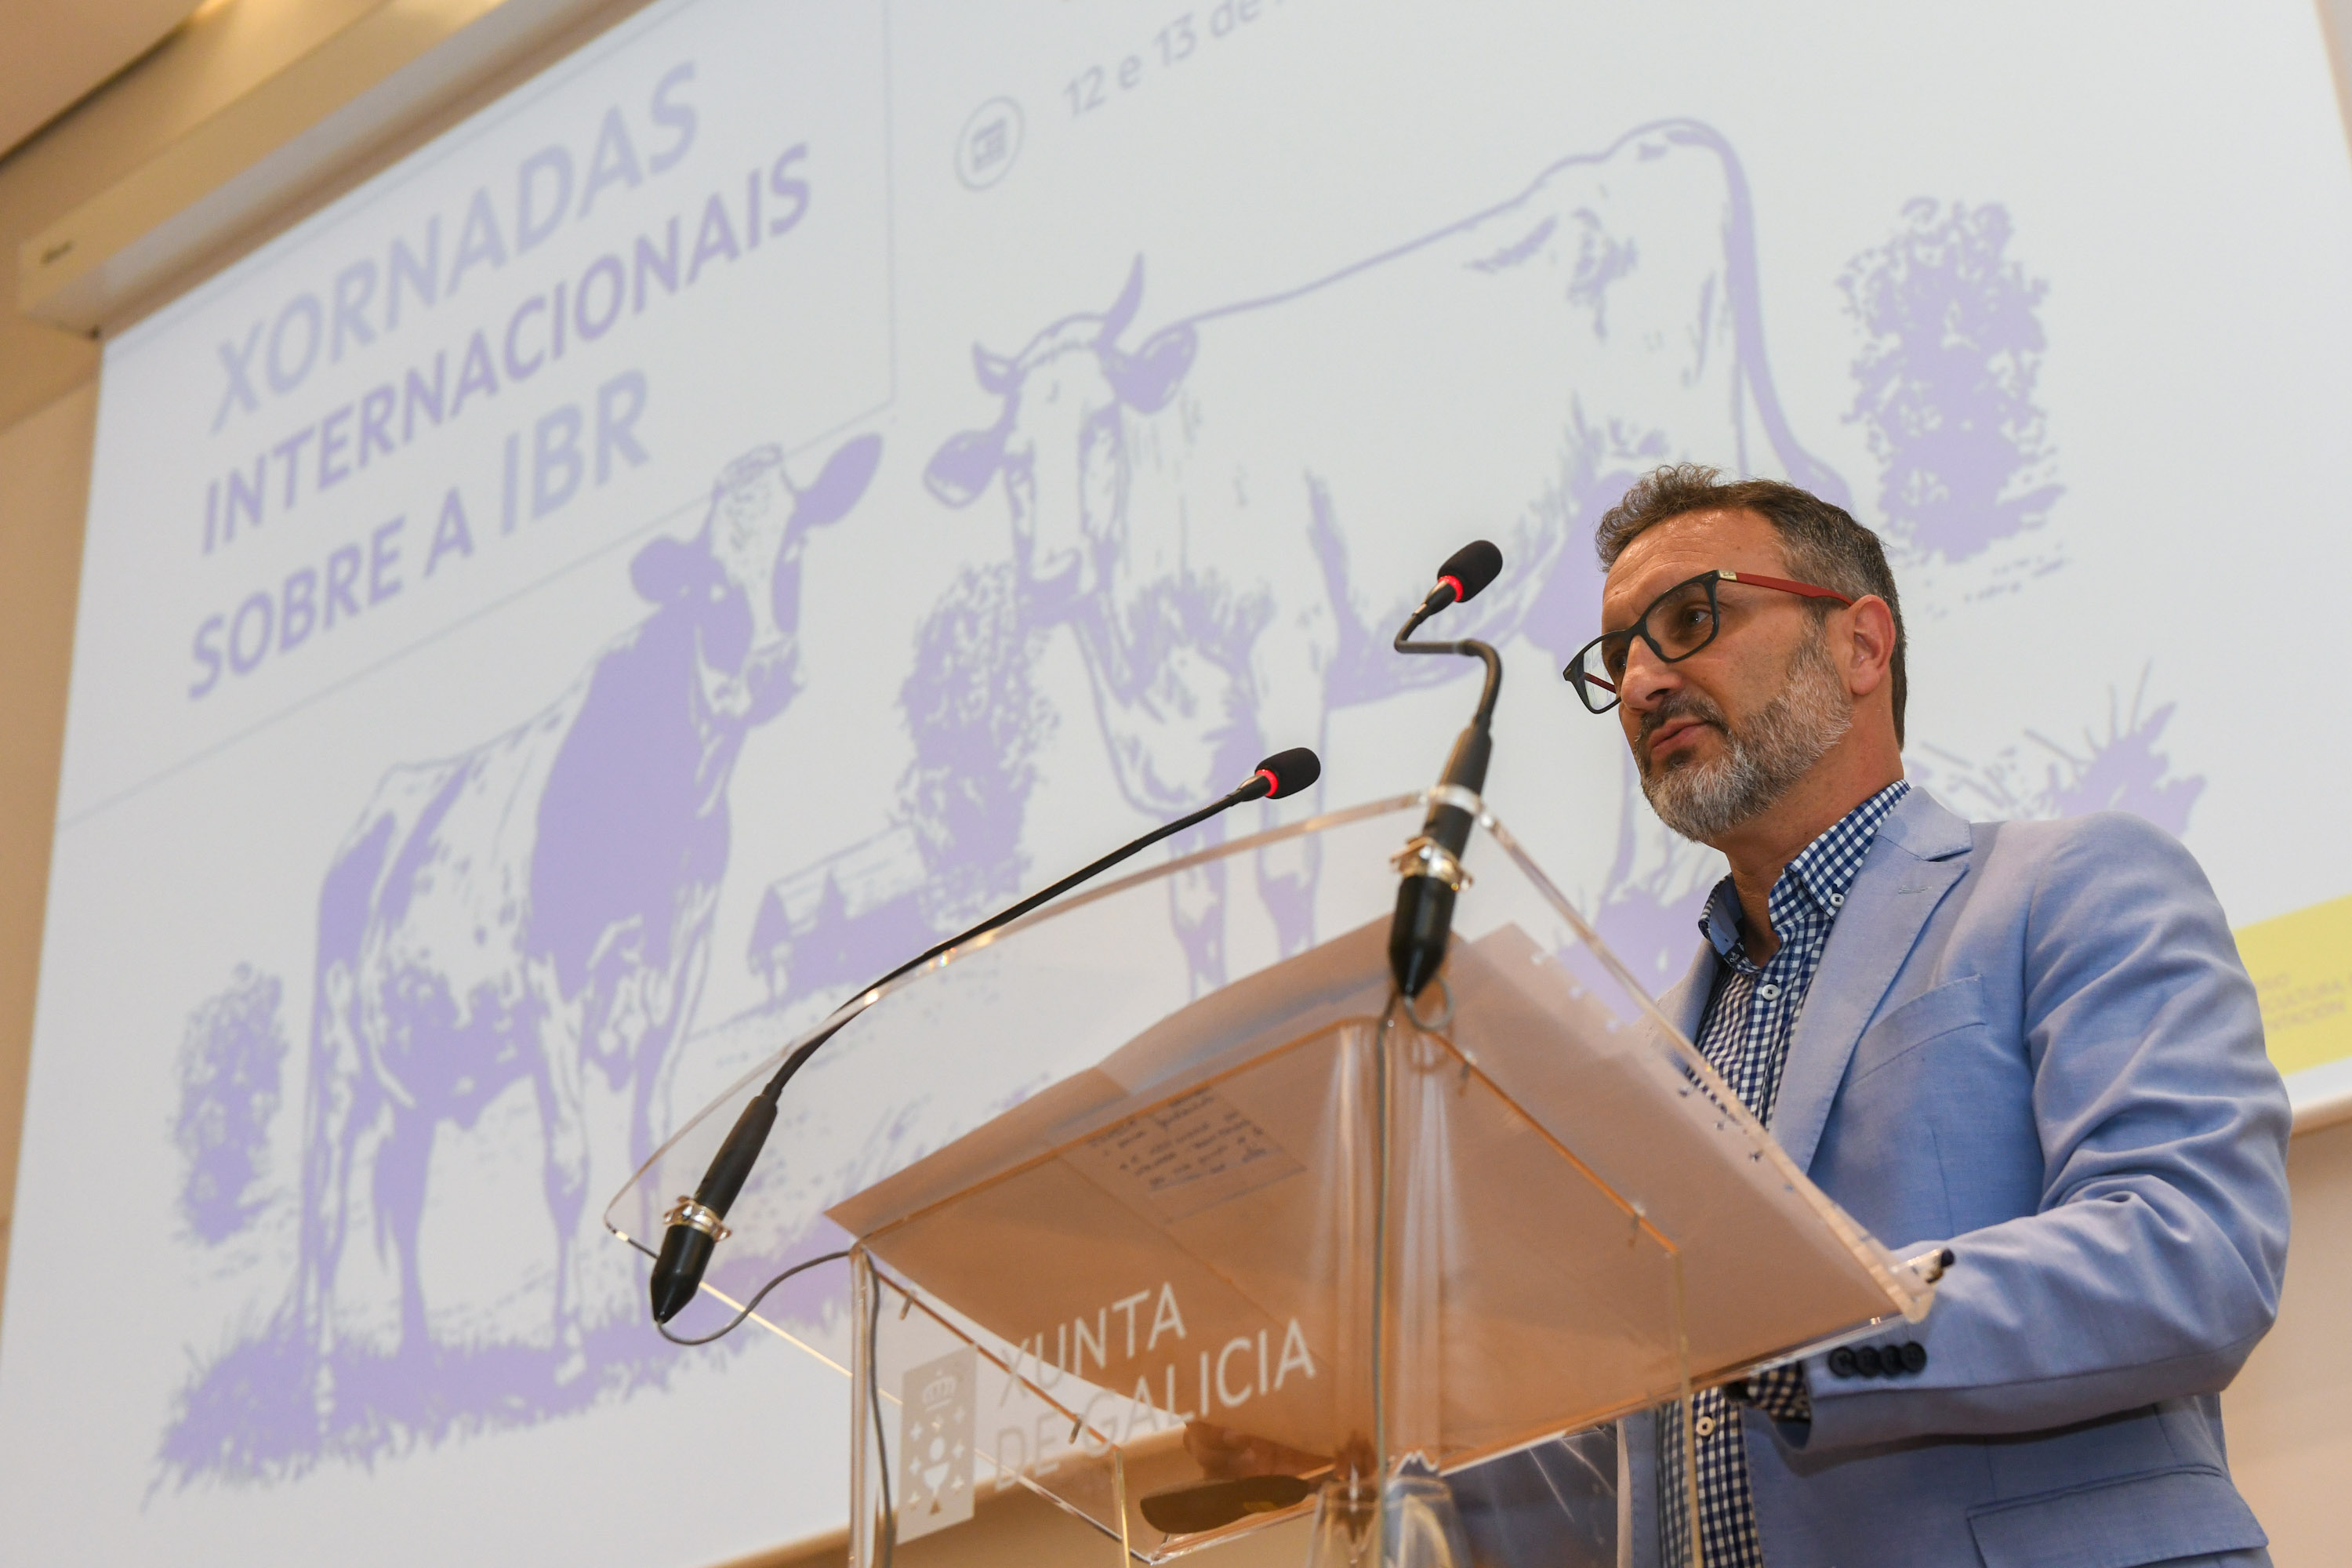 Image 1 of article A Xunta reúne por primeira vez a expertos internacionais nunhas xornadas sobre o control e diagnóstico da rinotraqueíte infecciosa bovina (IBR)